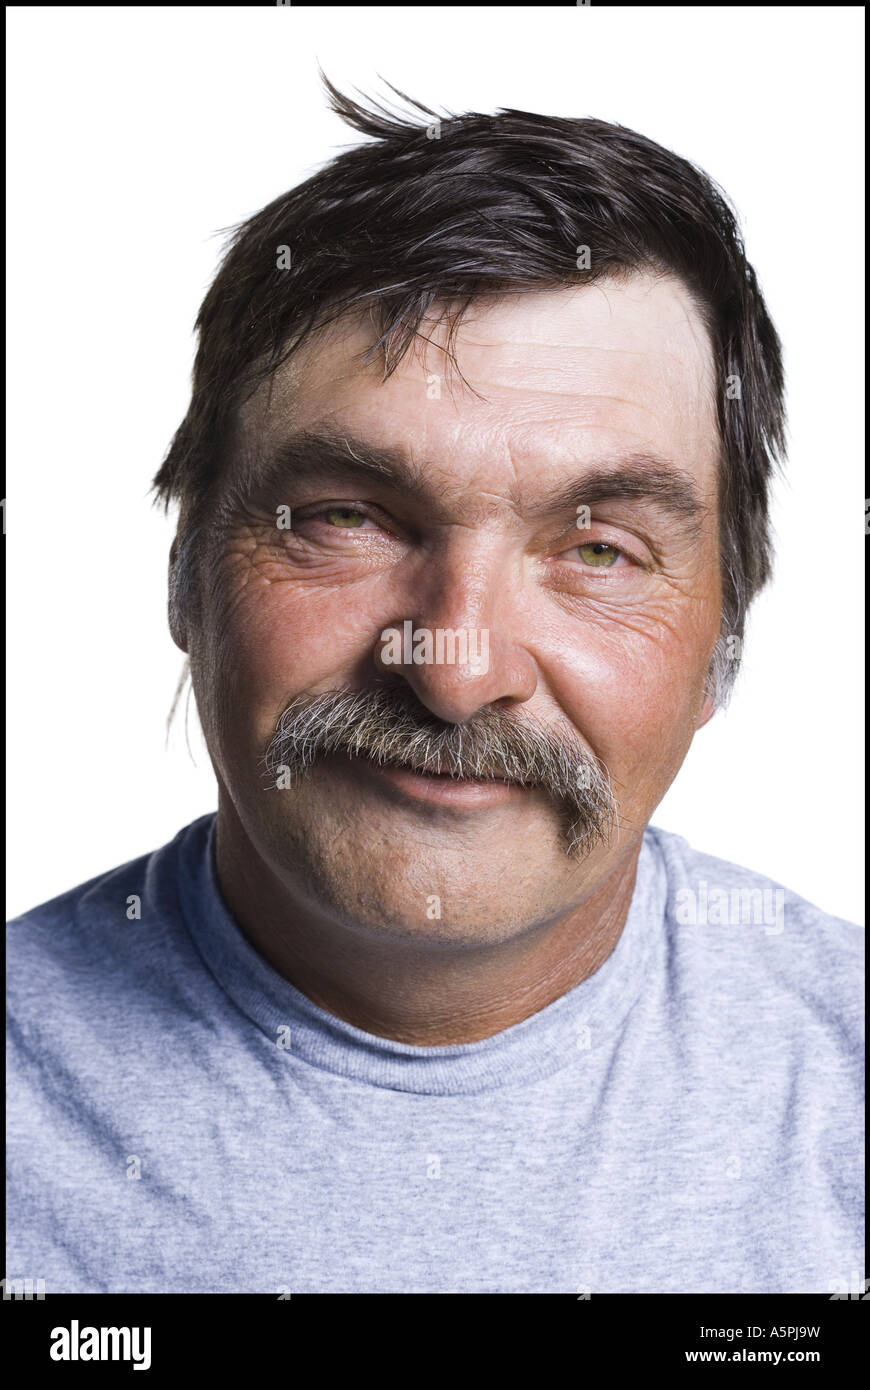 Disheveled middle aged man Stock Photo